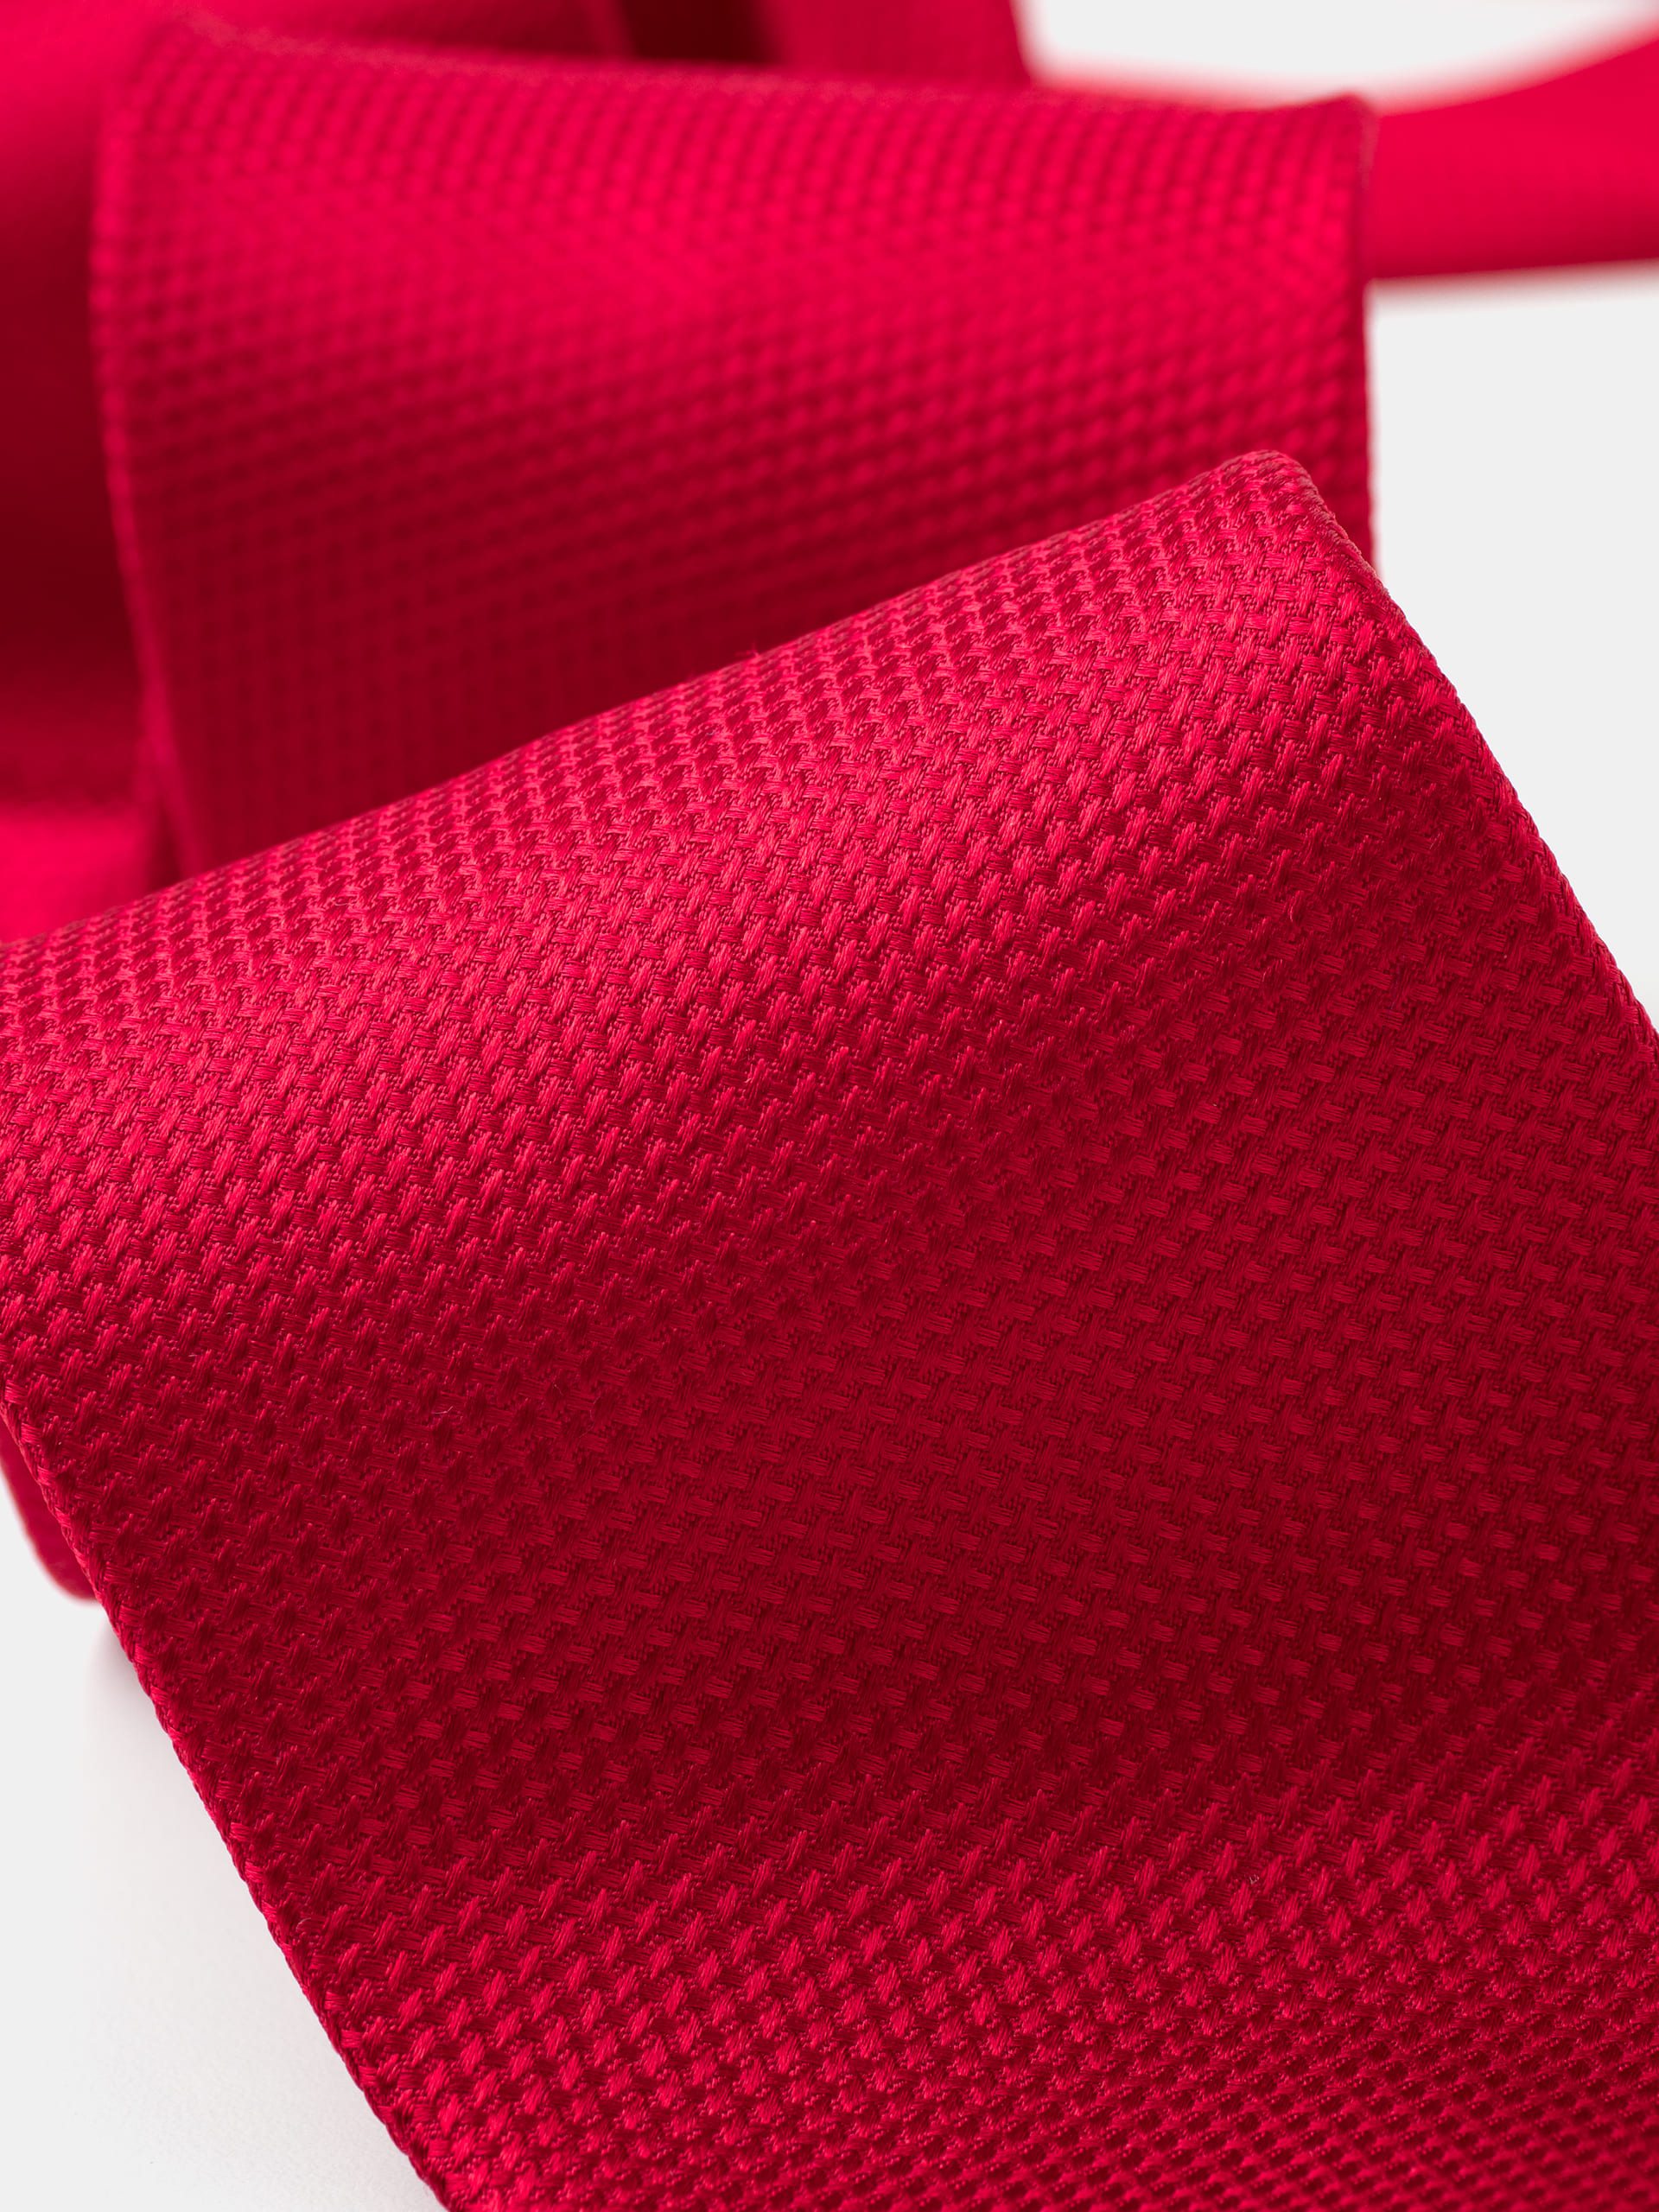 corbata-seda-jazquard-micro-estructura-rojo-2